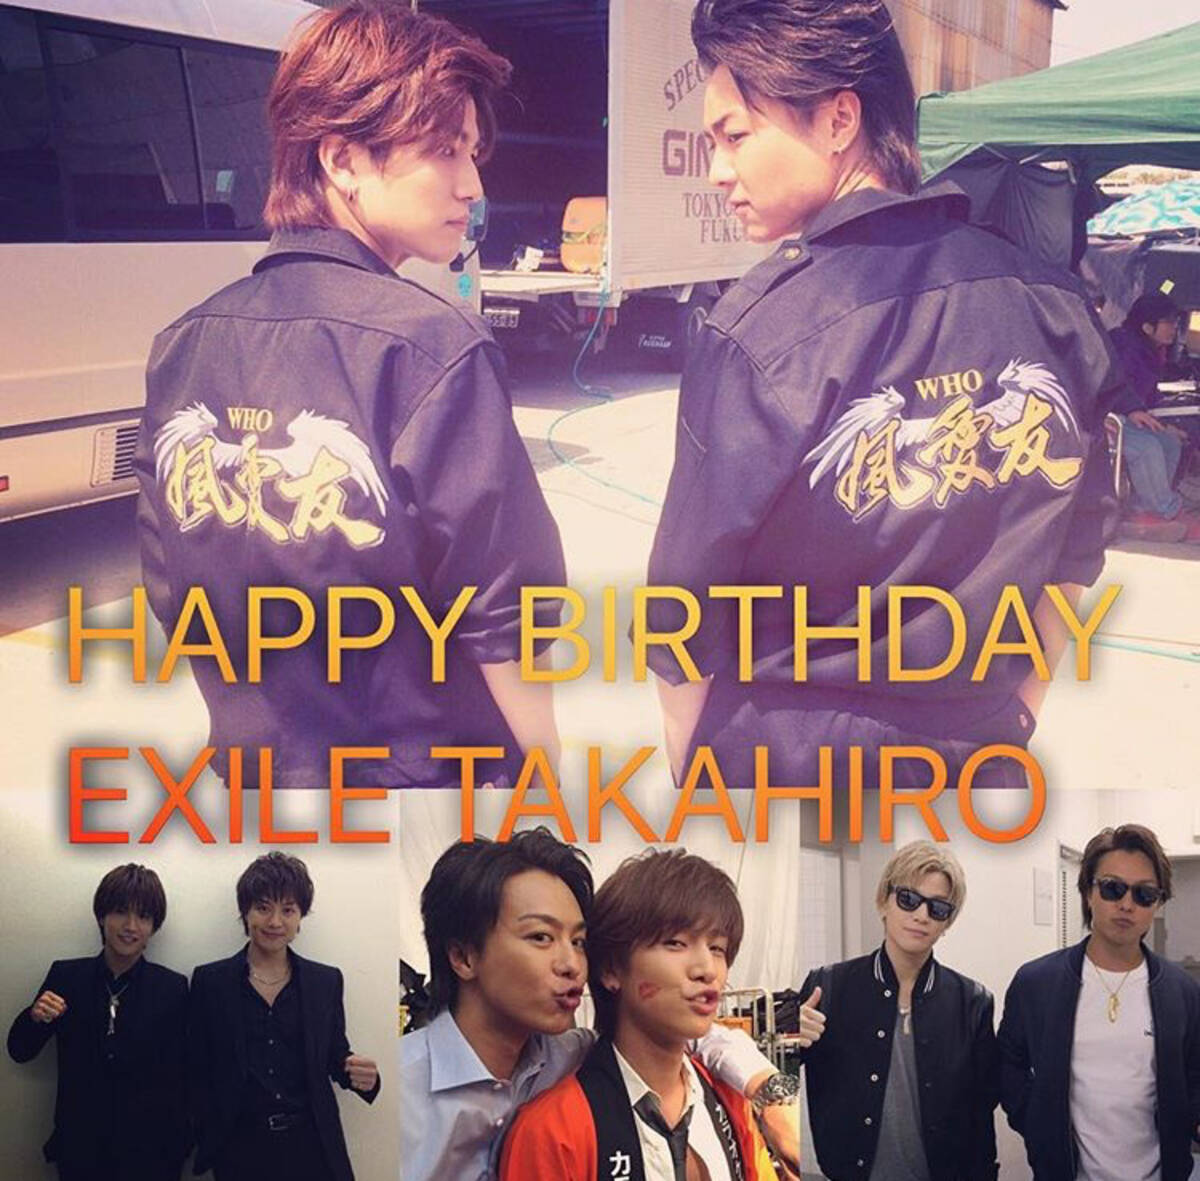 岩田剛典 Exile 三代目jsb が Takahiroの誕生日にキスマーク入りの写真で祝福 15年12月8日 エキサイトニュース